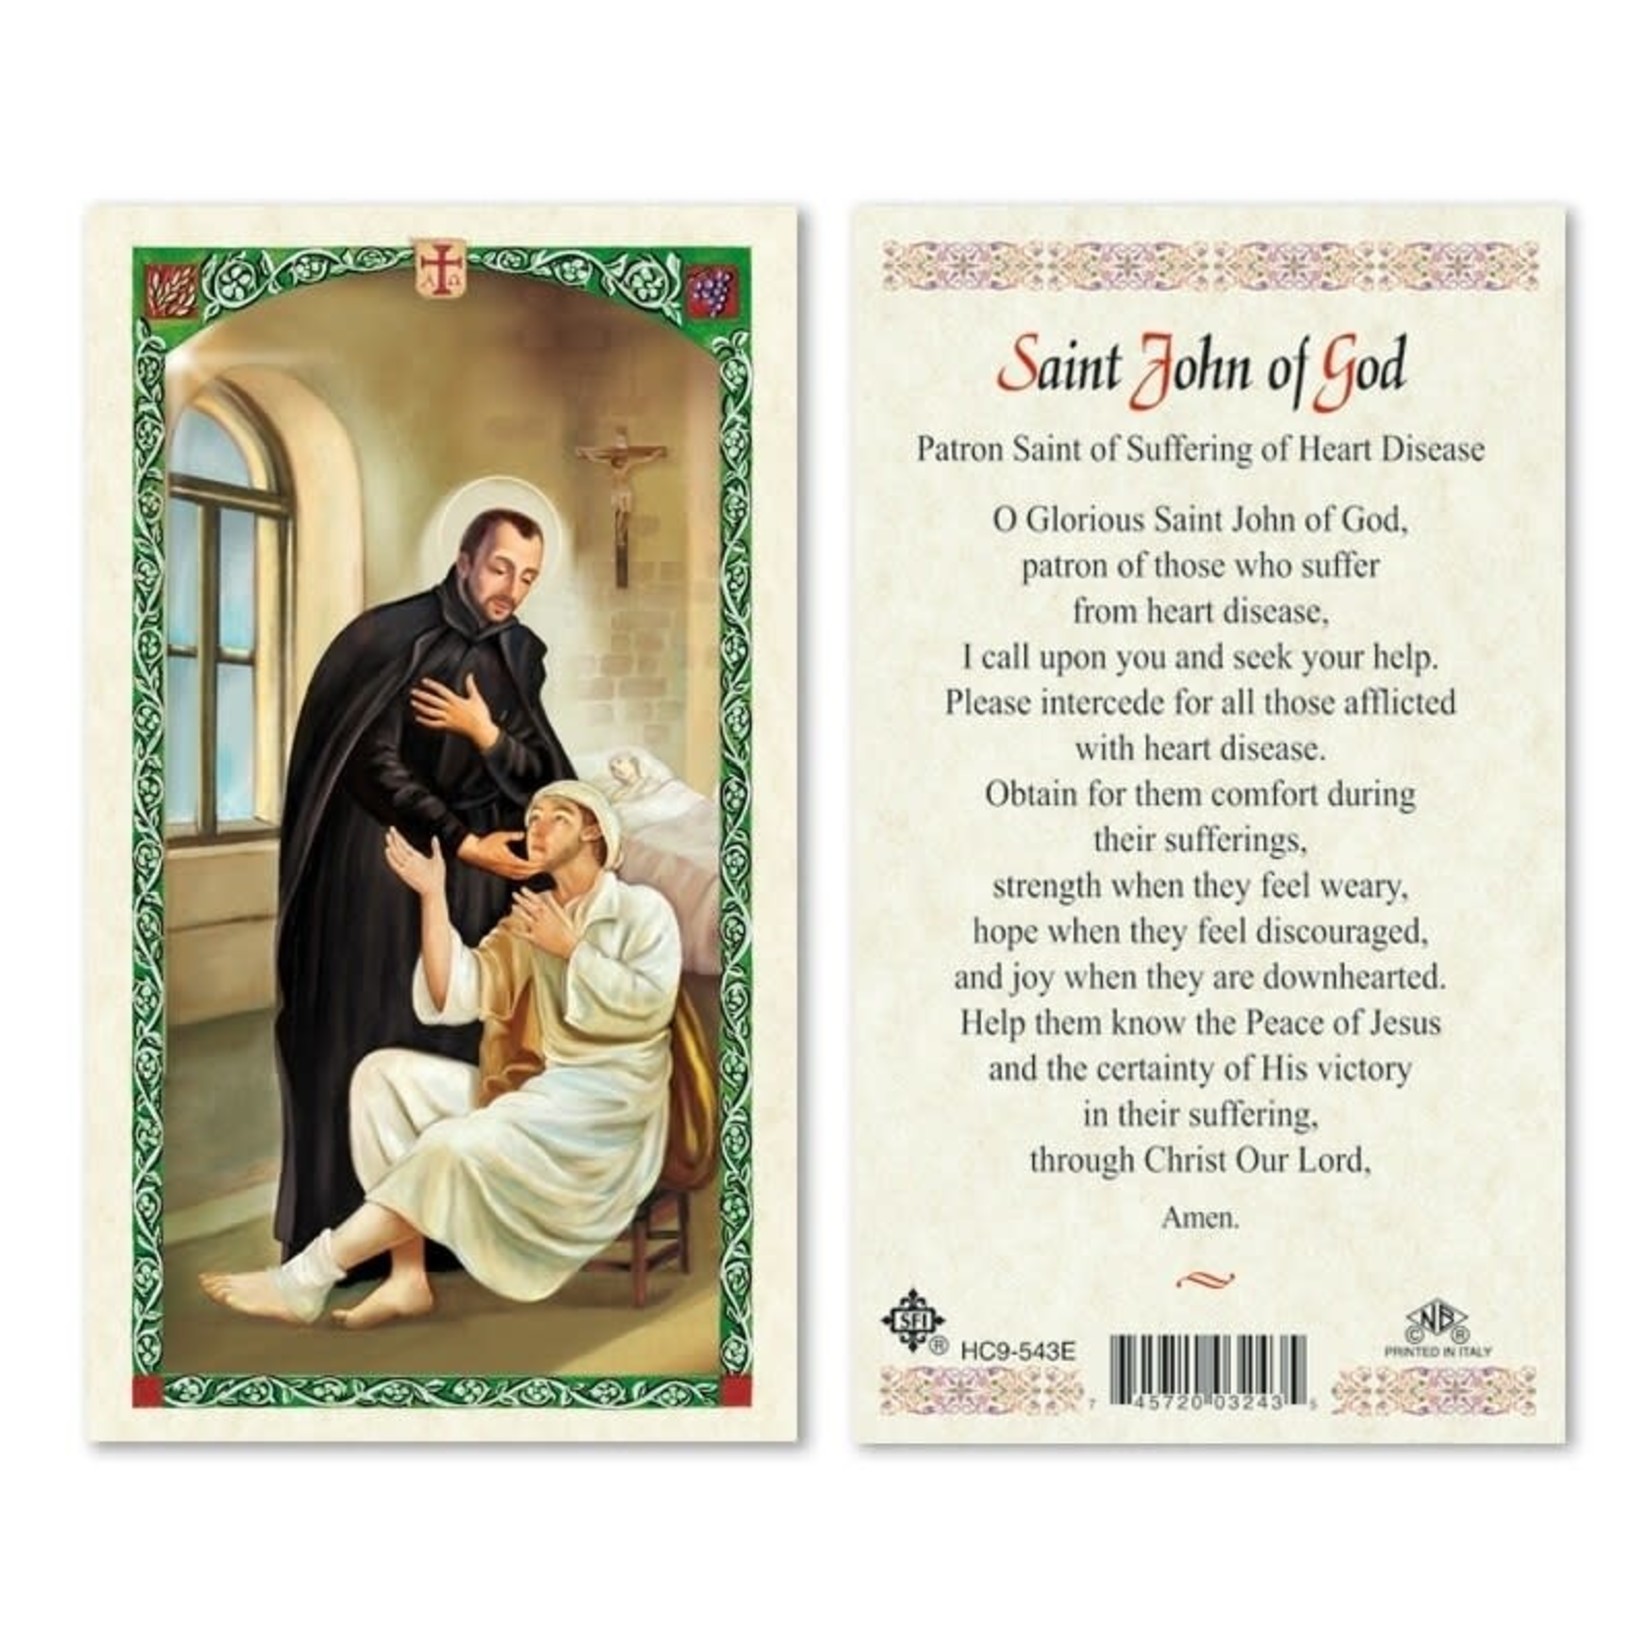 Prayer Card Saint John of God for Heart Disease